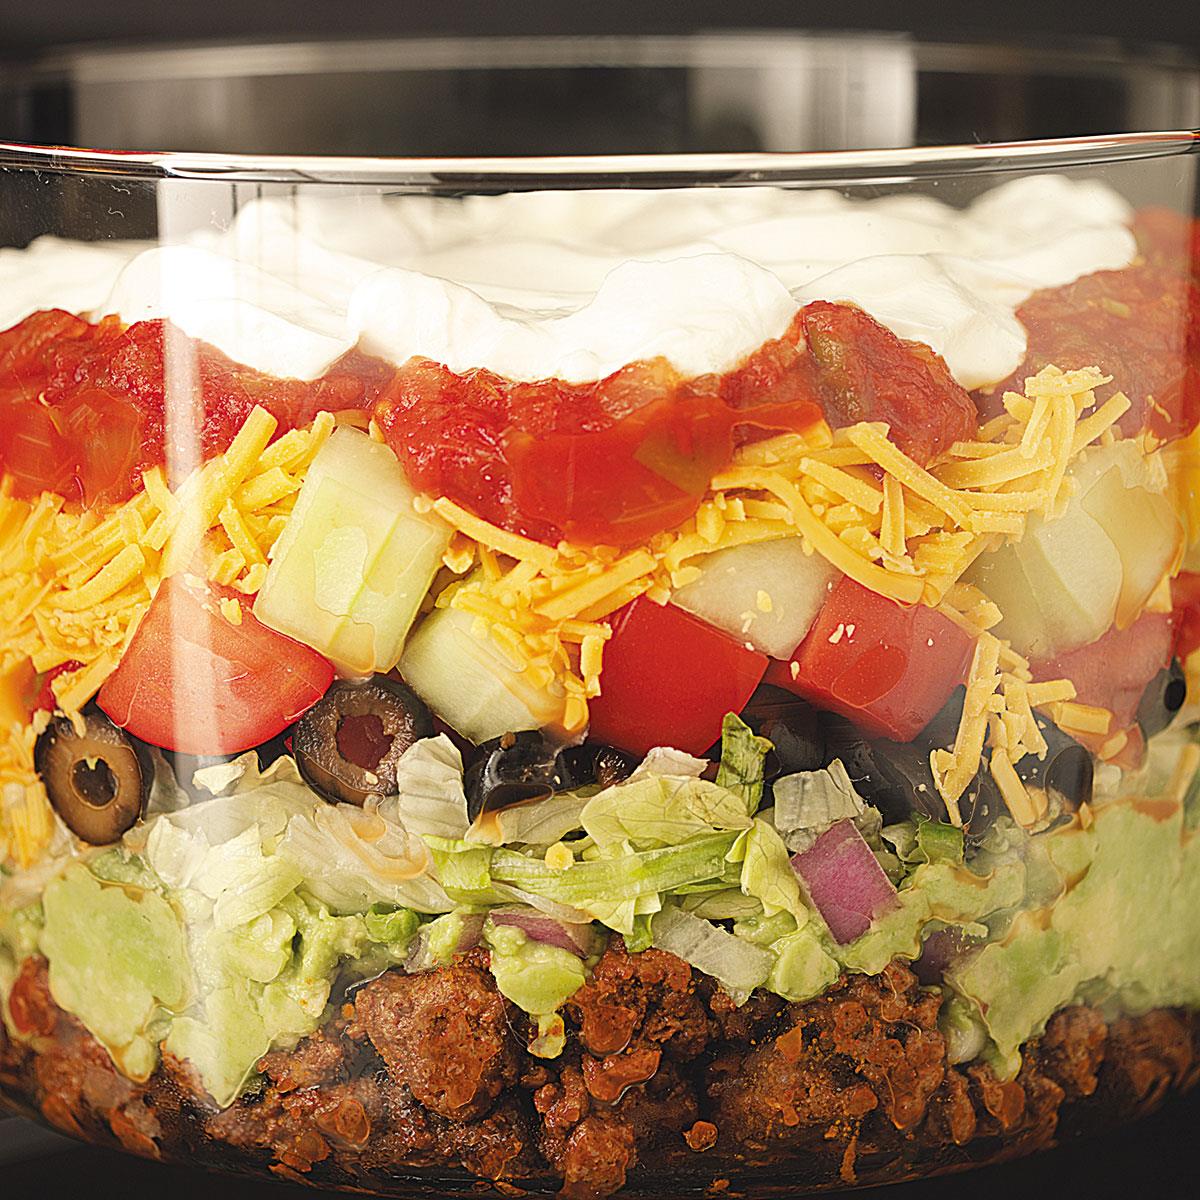 Chẳng cần phải đến Mexico để thưởng thức món ăn truyền thống đầy màu sắc. Với món Layered taco salad recipe, bạn sẽ có xúc cảm như được phục vụ ngay tại Mexico với hình ảnh món ăn tràn đầy màu sắc và hợp khẩu vị.